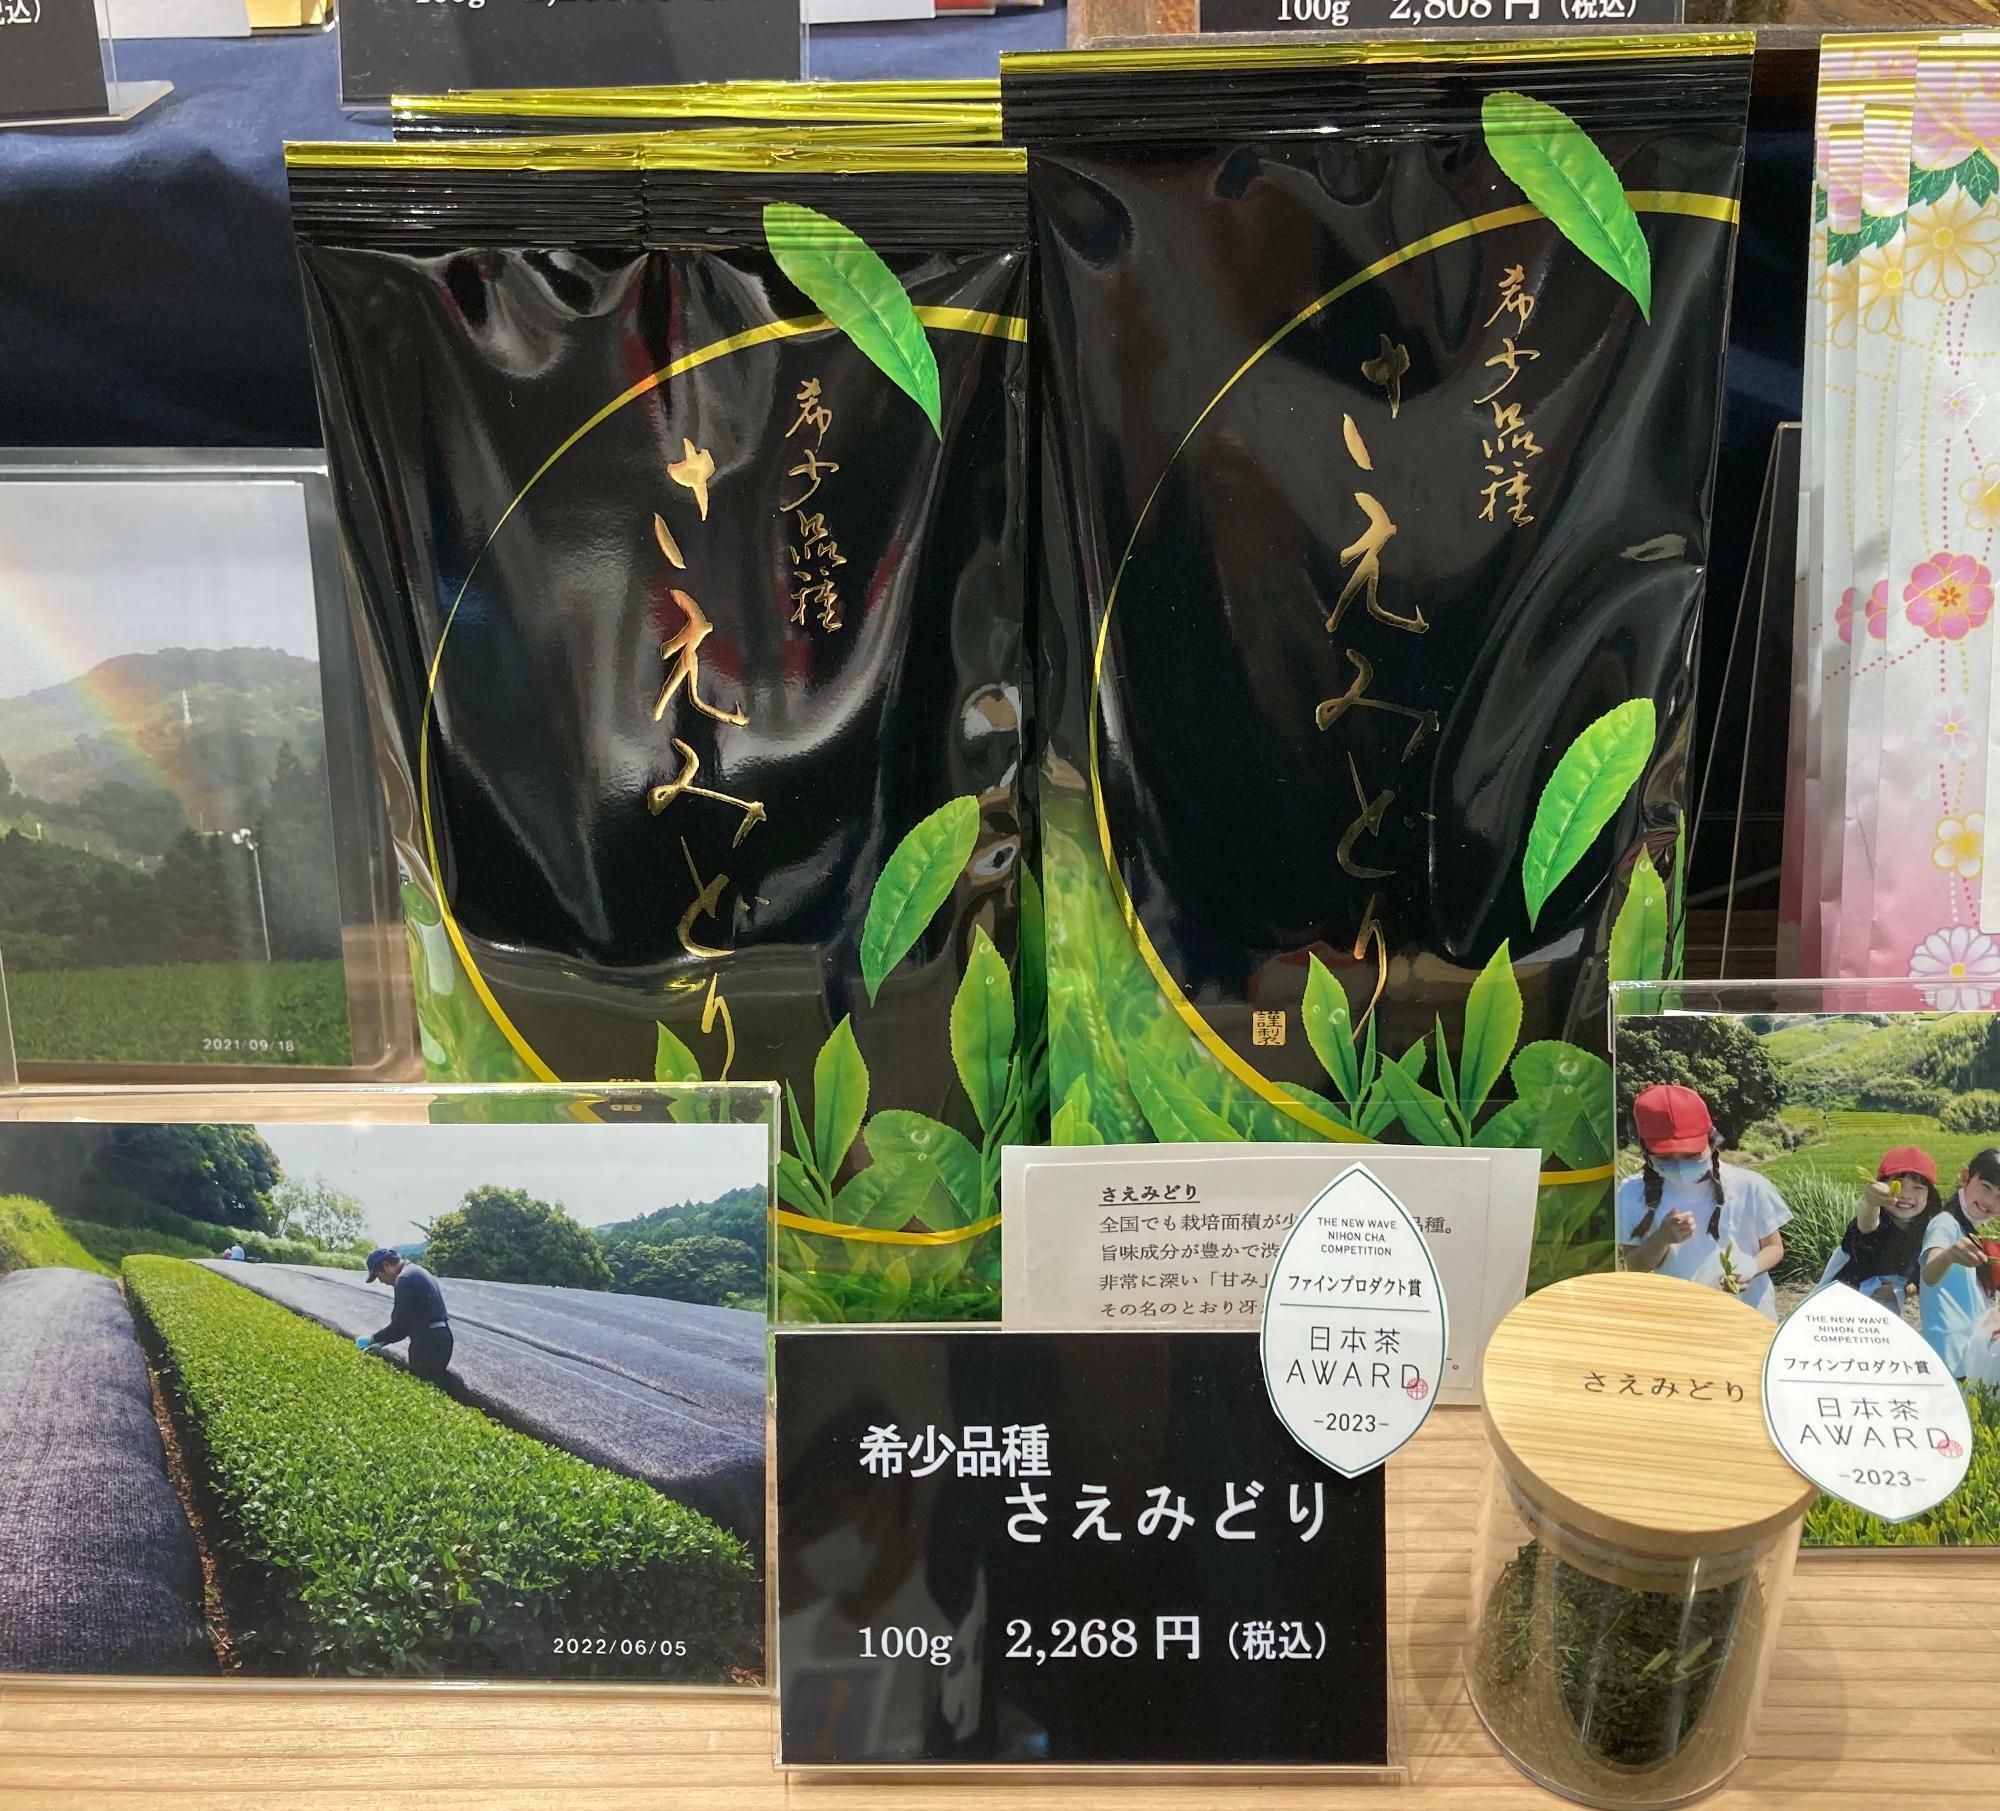 日本茶AWARD2023深蒸し煎茶部門ファインプロダクト賞に輝いた「希少品種さえみどり」